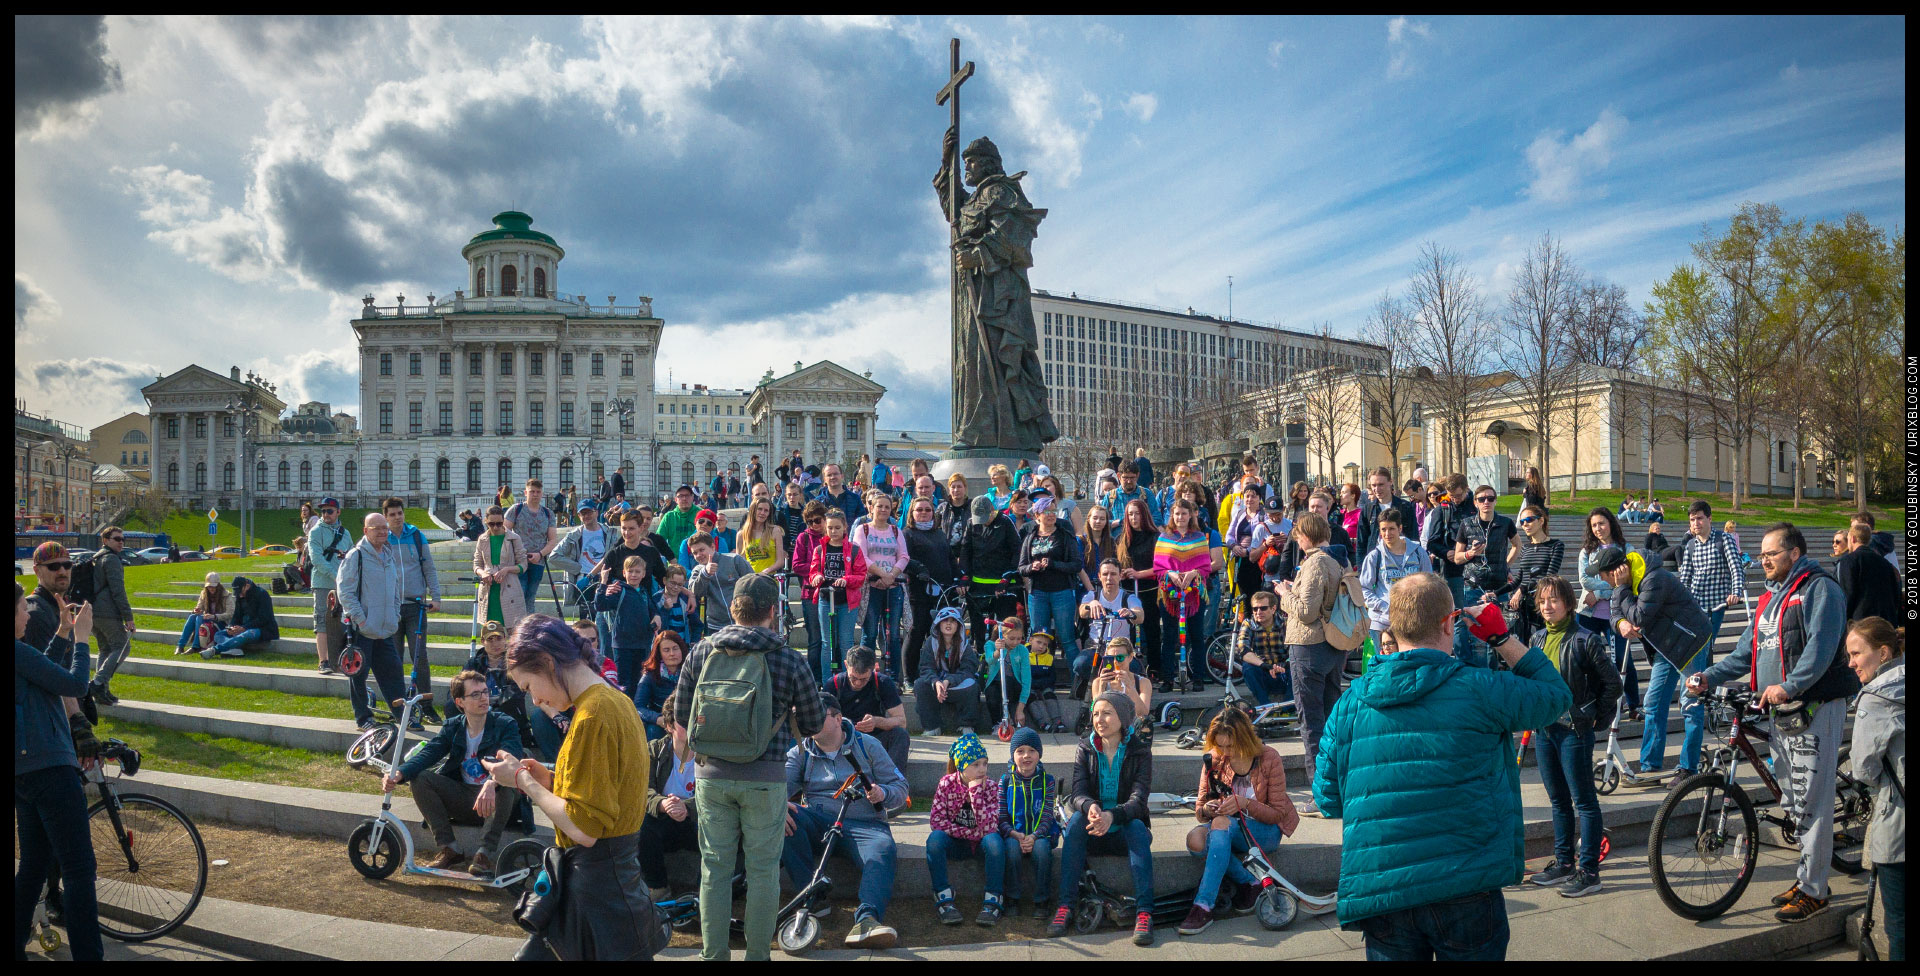 Боровицкая площадь, Москва, Россия, 2018, весна, памятник